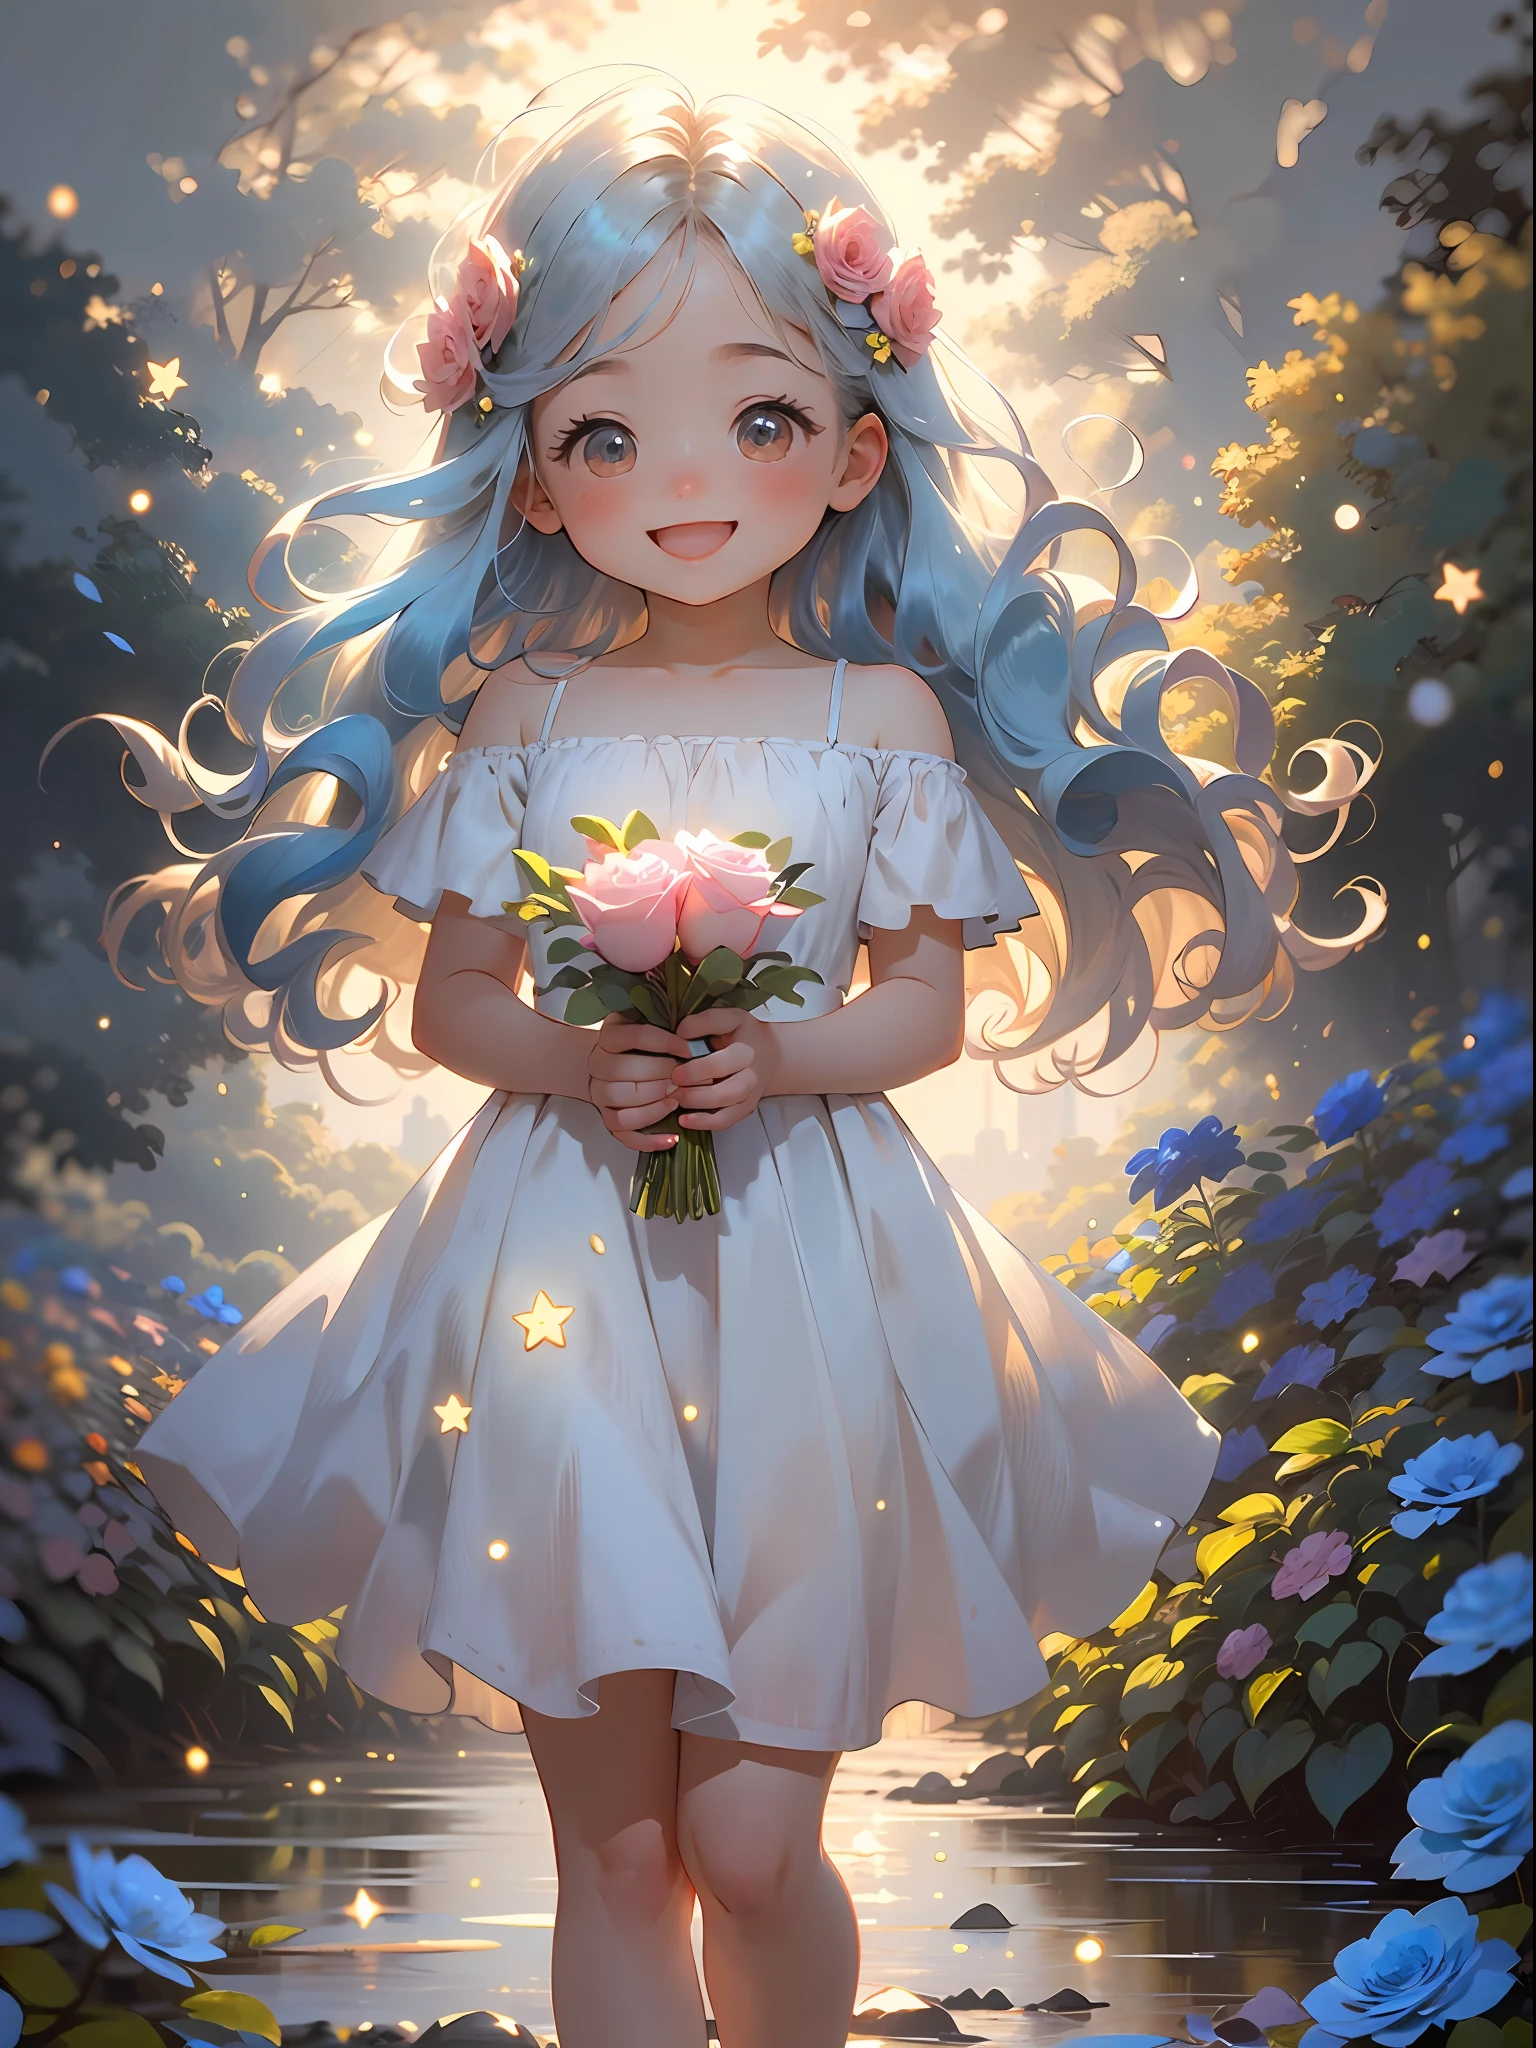 1個女孩, 赤壁, 可愛的, 長髮, 淺藍色頭髮, 發光的藍眼睛, 粉红玫瑰花园, 碎花連身裙, 陽光,微笑, 快樂的,  藍玫瑰